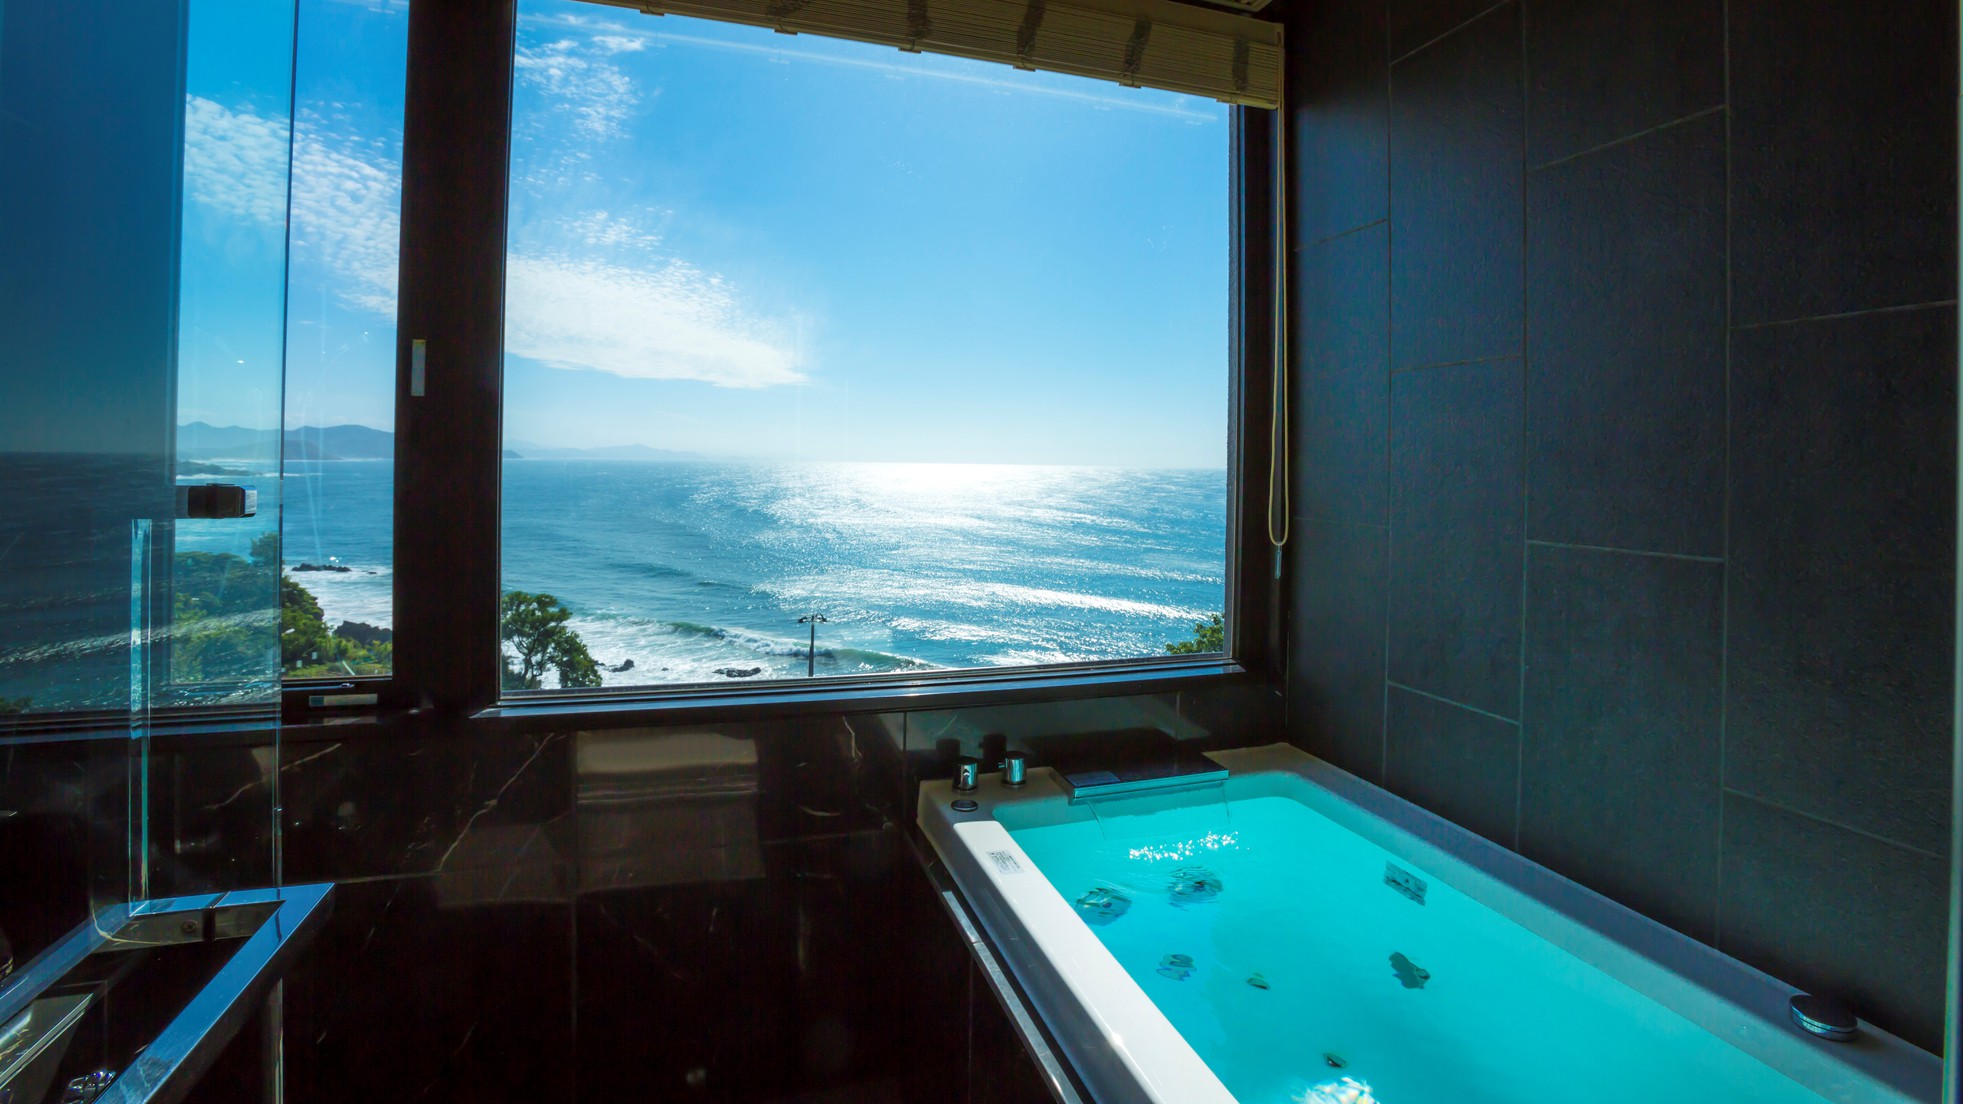 【302・天海】オーシャンビューの客室展望風呂からも、美しい海が一望できます。